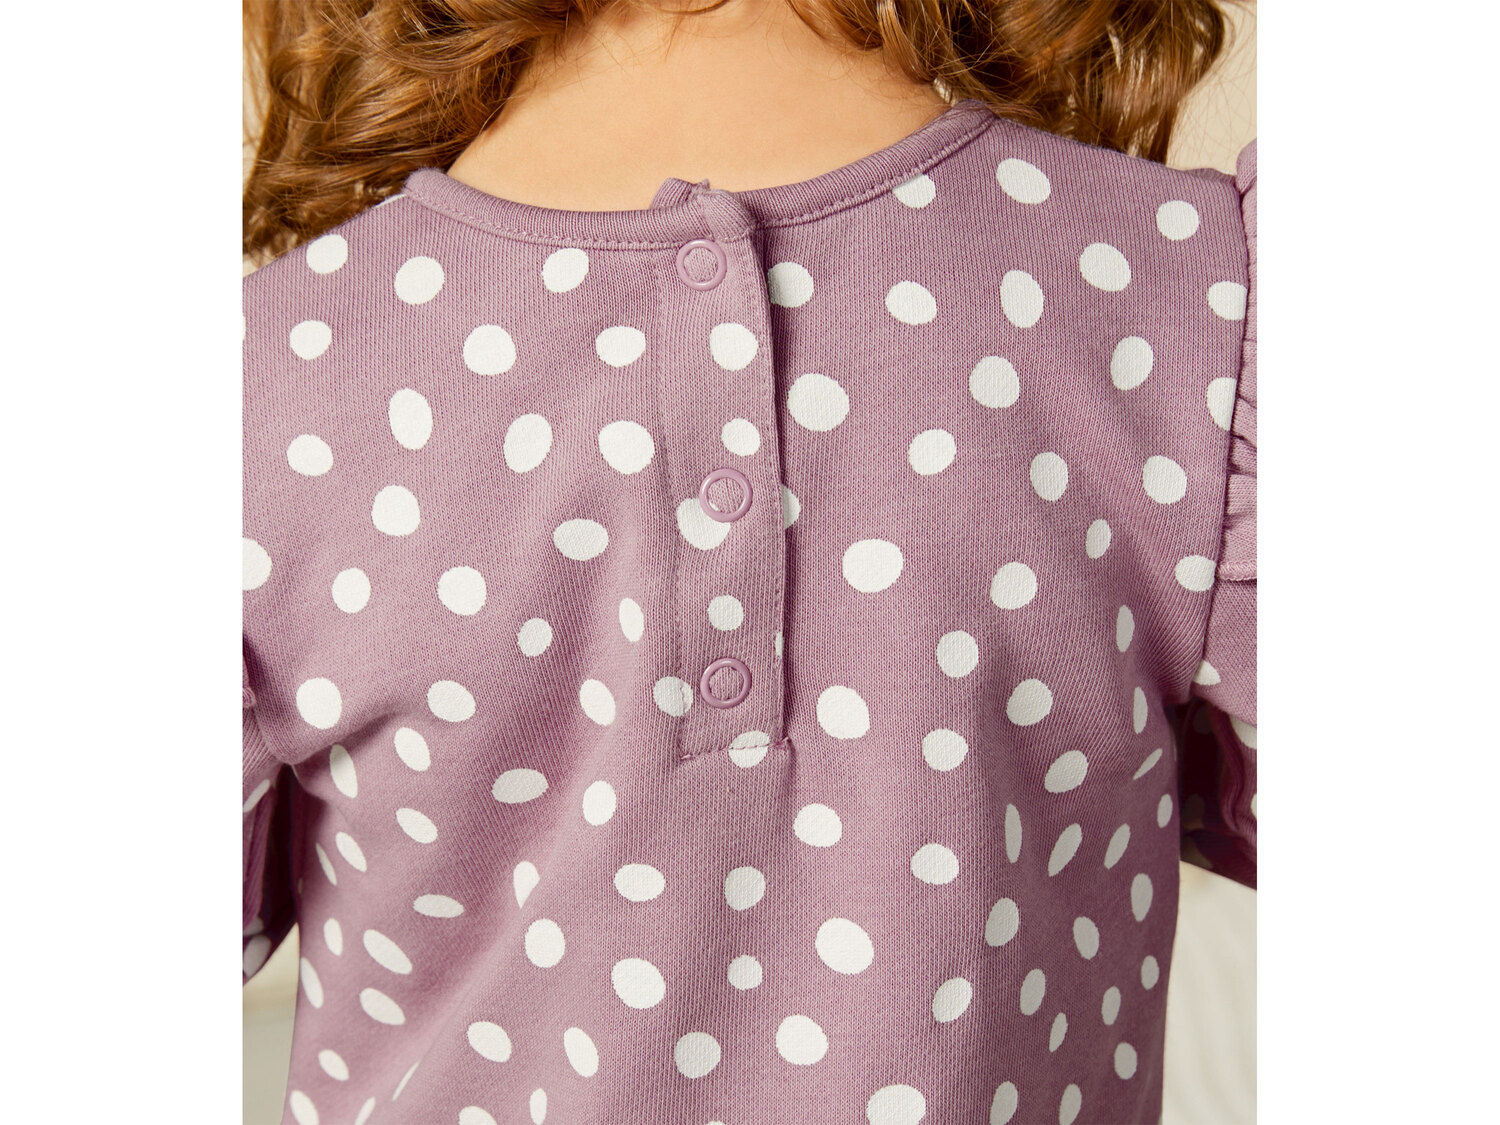 Sukienka dresowa niemowlęca Disney, cena 24,99 PLN 
- rozmiary: 62-92
- 84% bawełny, ...